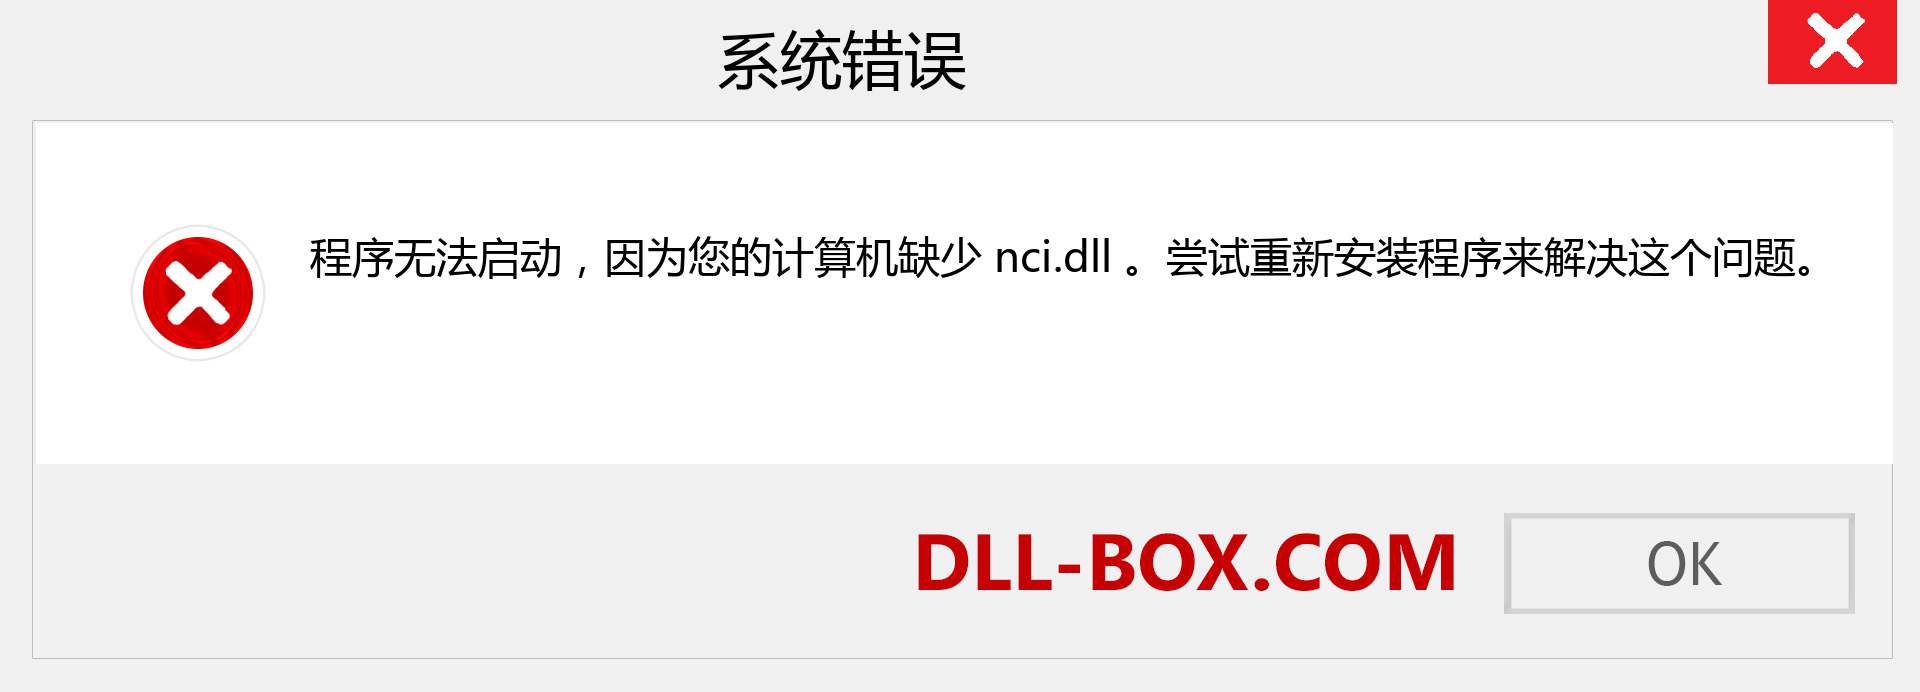 nci.dll 文件丢失？。 适用于 Windows 7、8、10 的下载 - 修复 Windows、照片、图像上的 nci dll 丢失错误